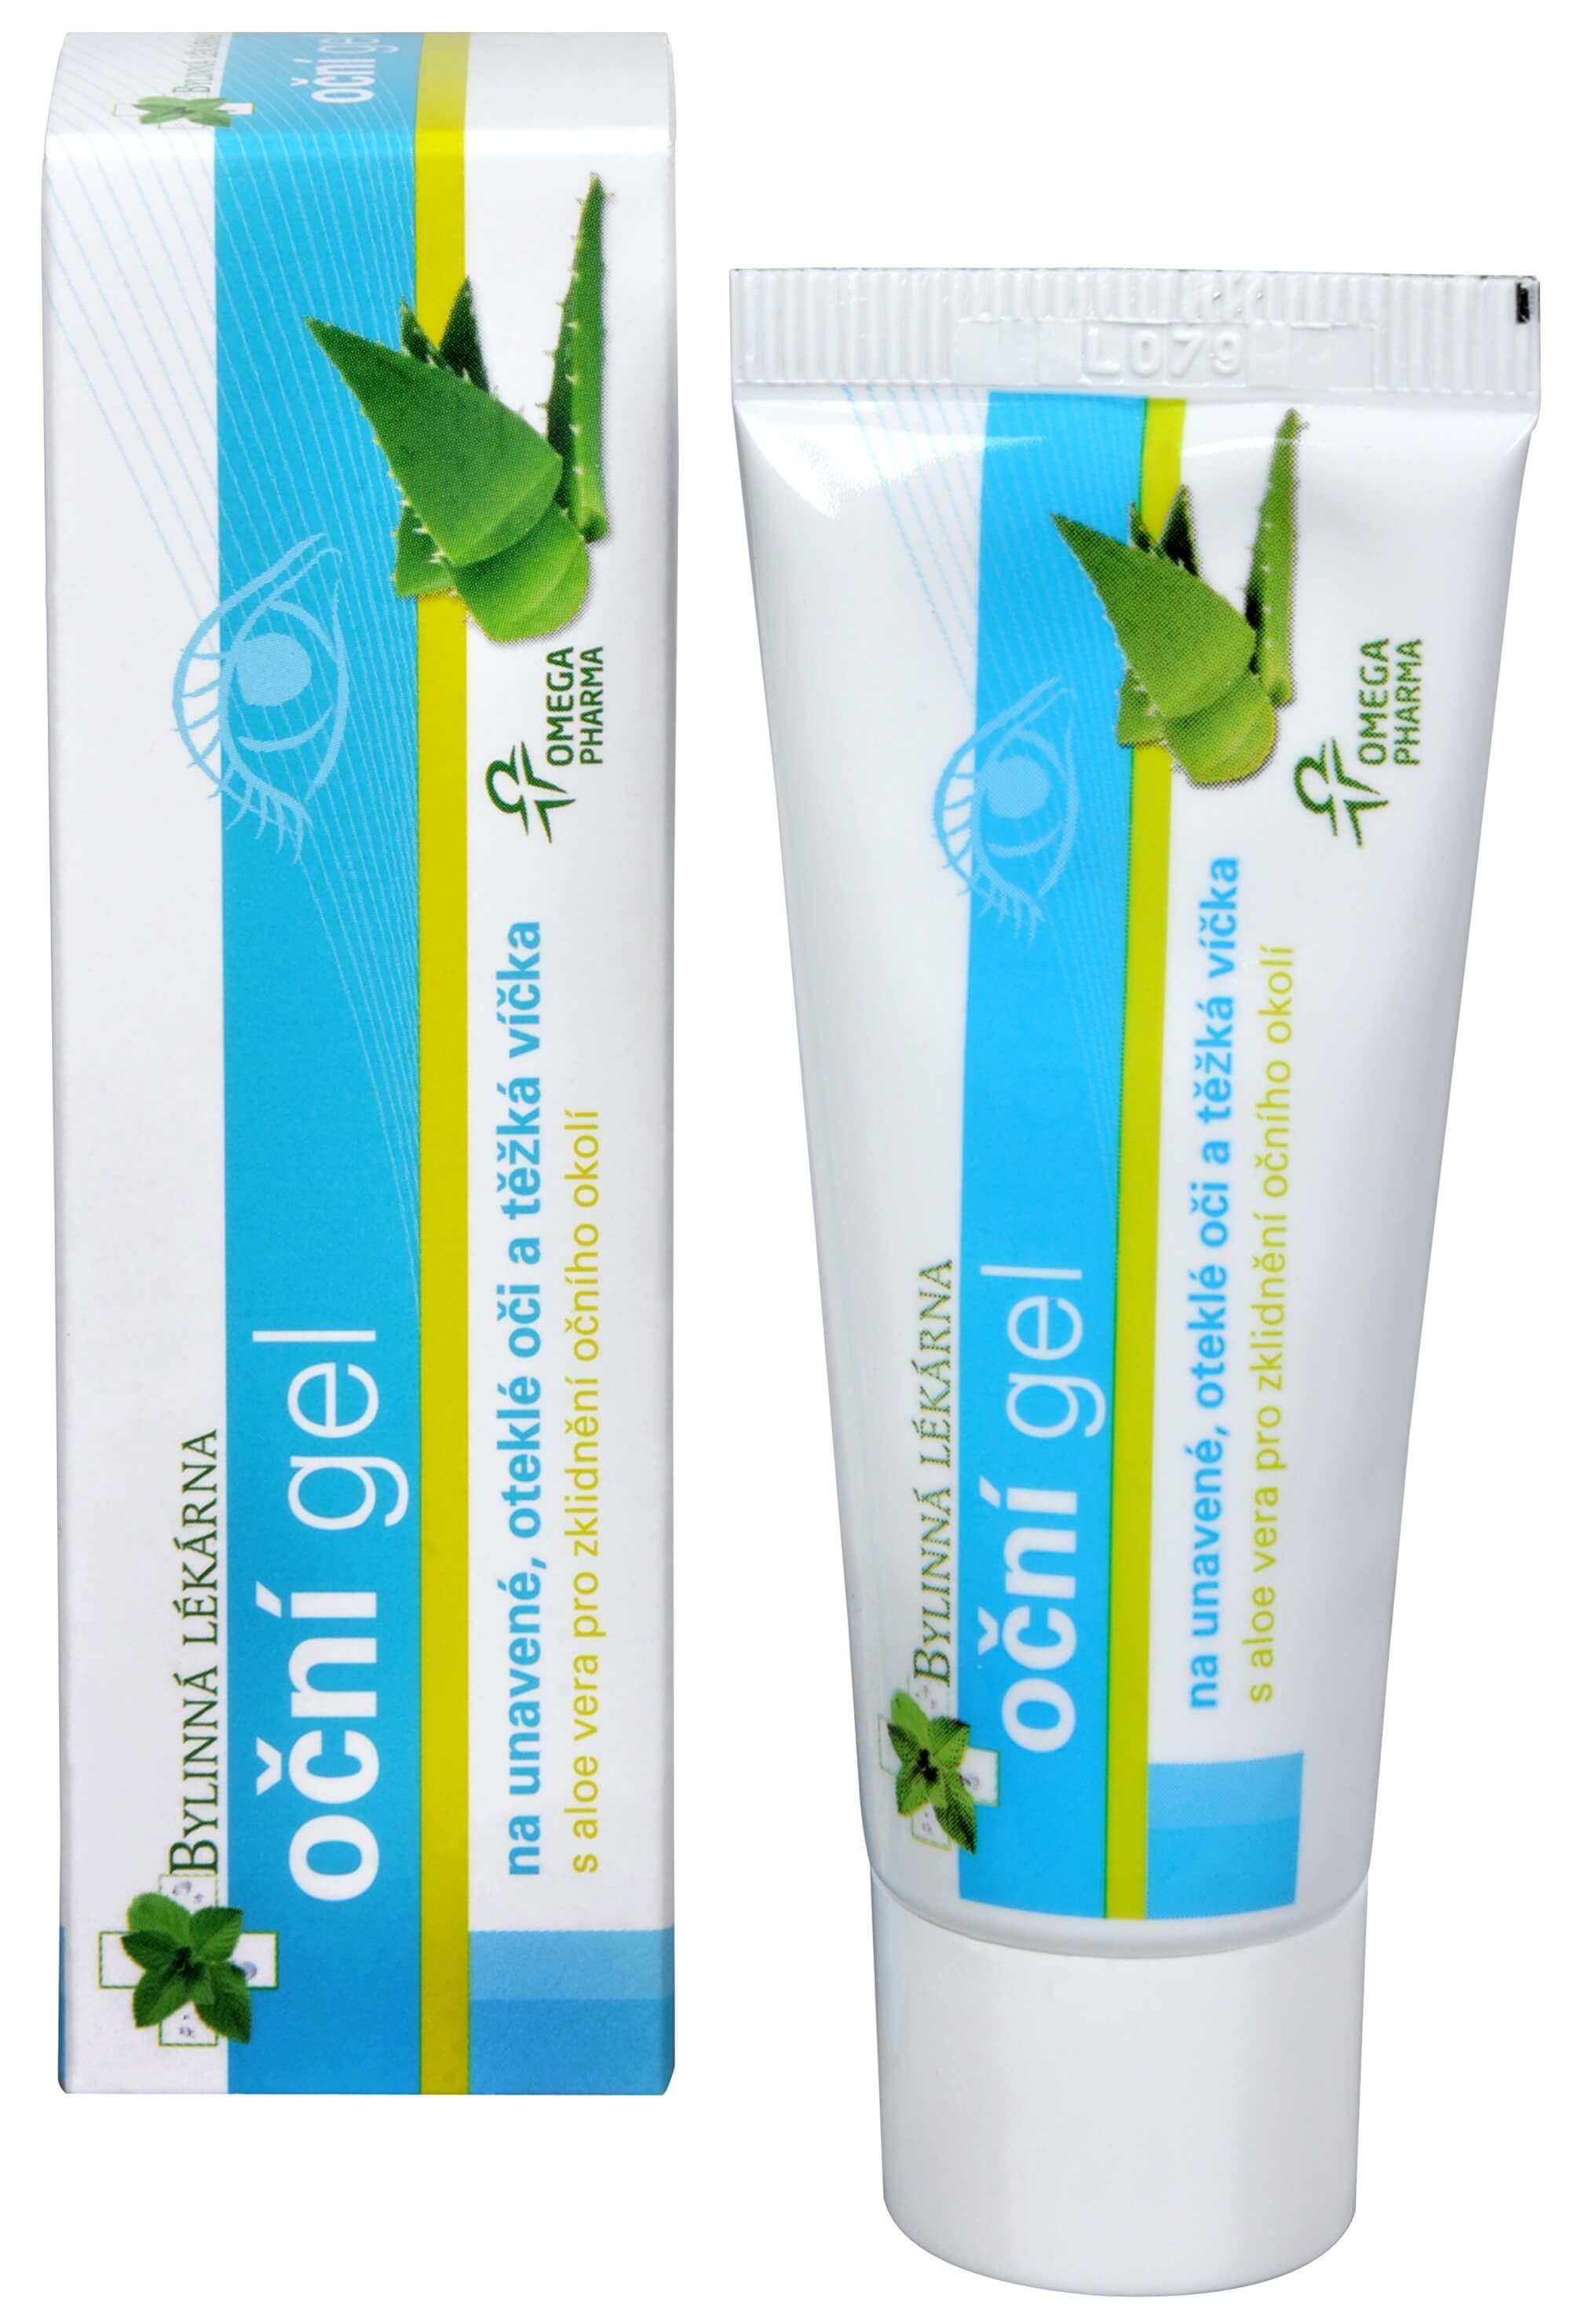 Zobrazit detail výrobku Omega Pharma Oční gel 25 g + 2 měsíce na vrácení zboží